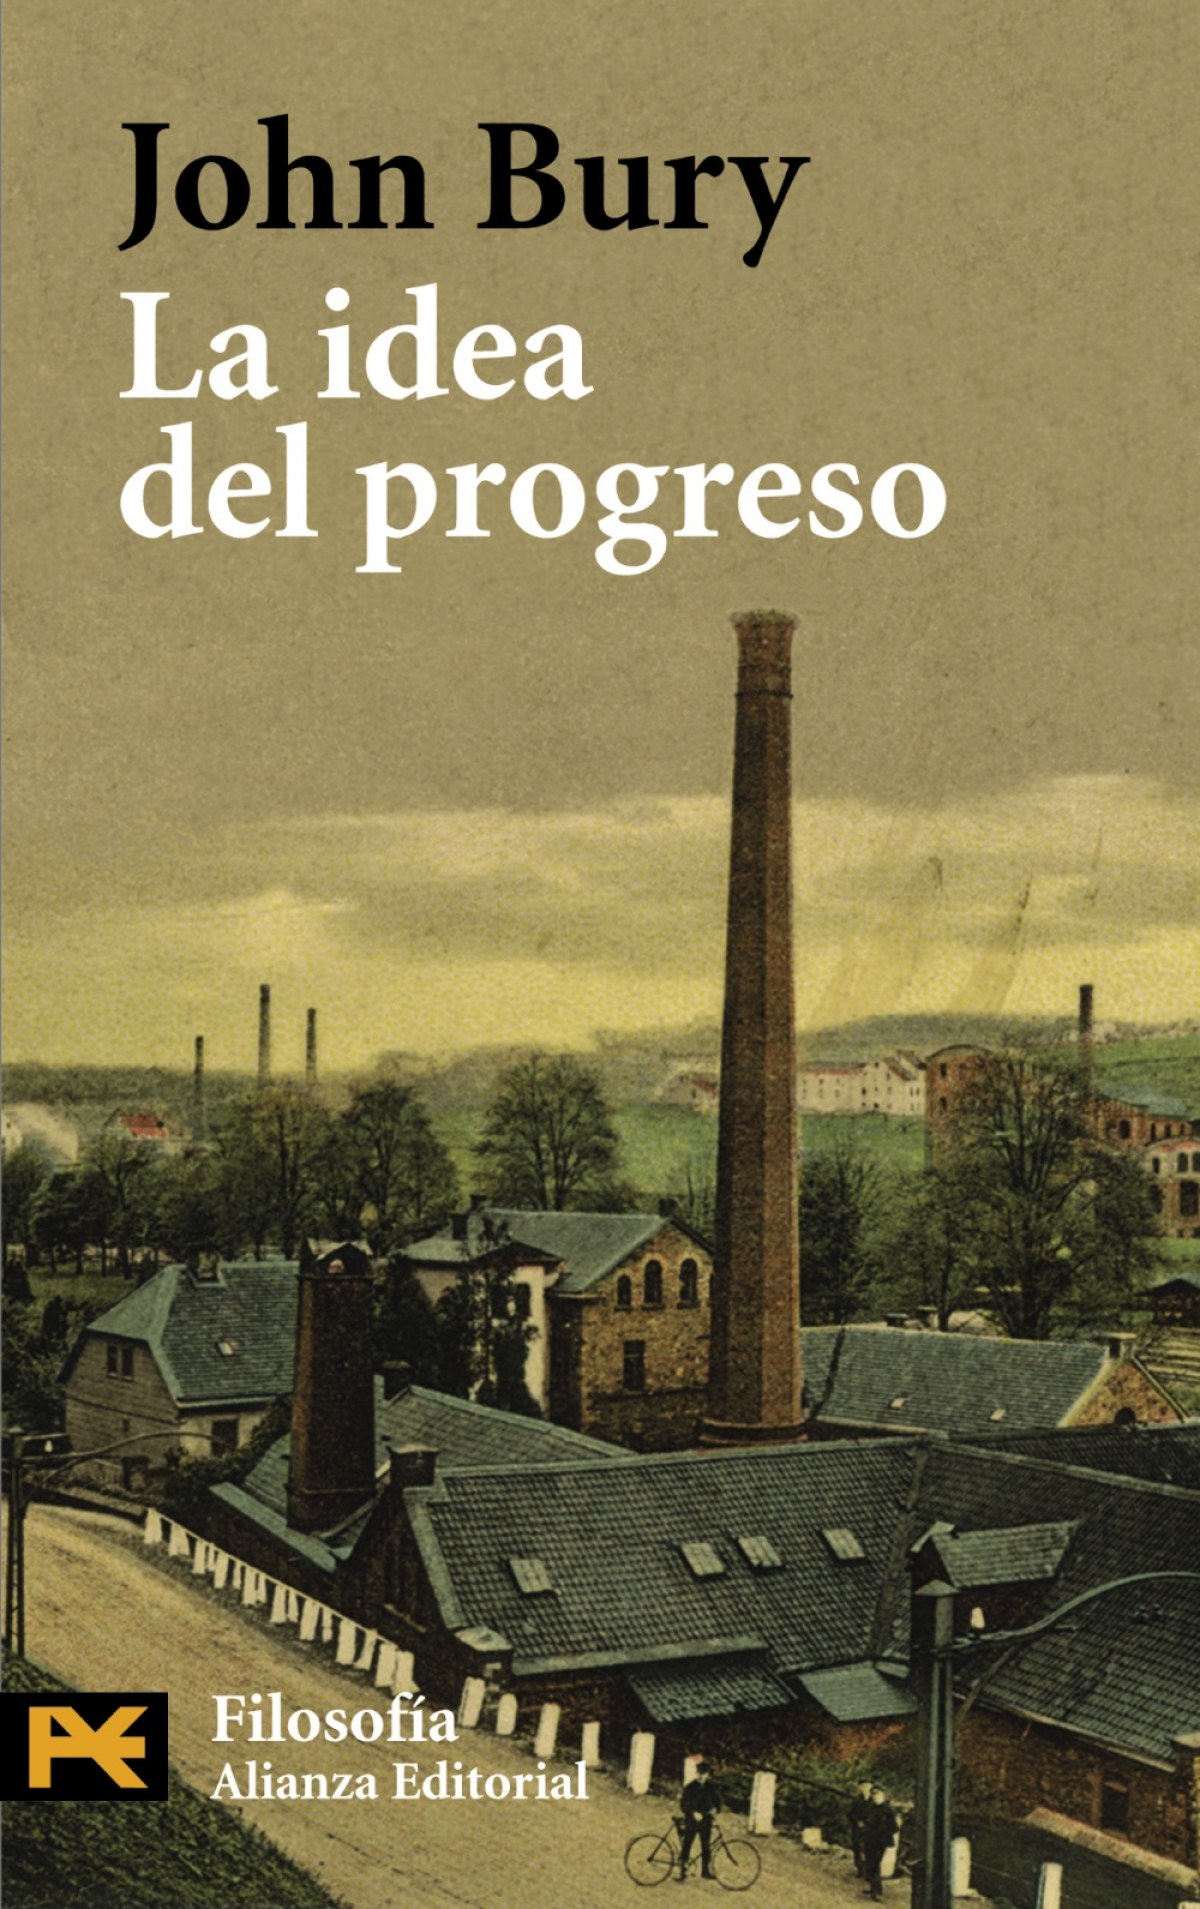 La idea del progreso - Bury, John B.